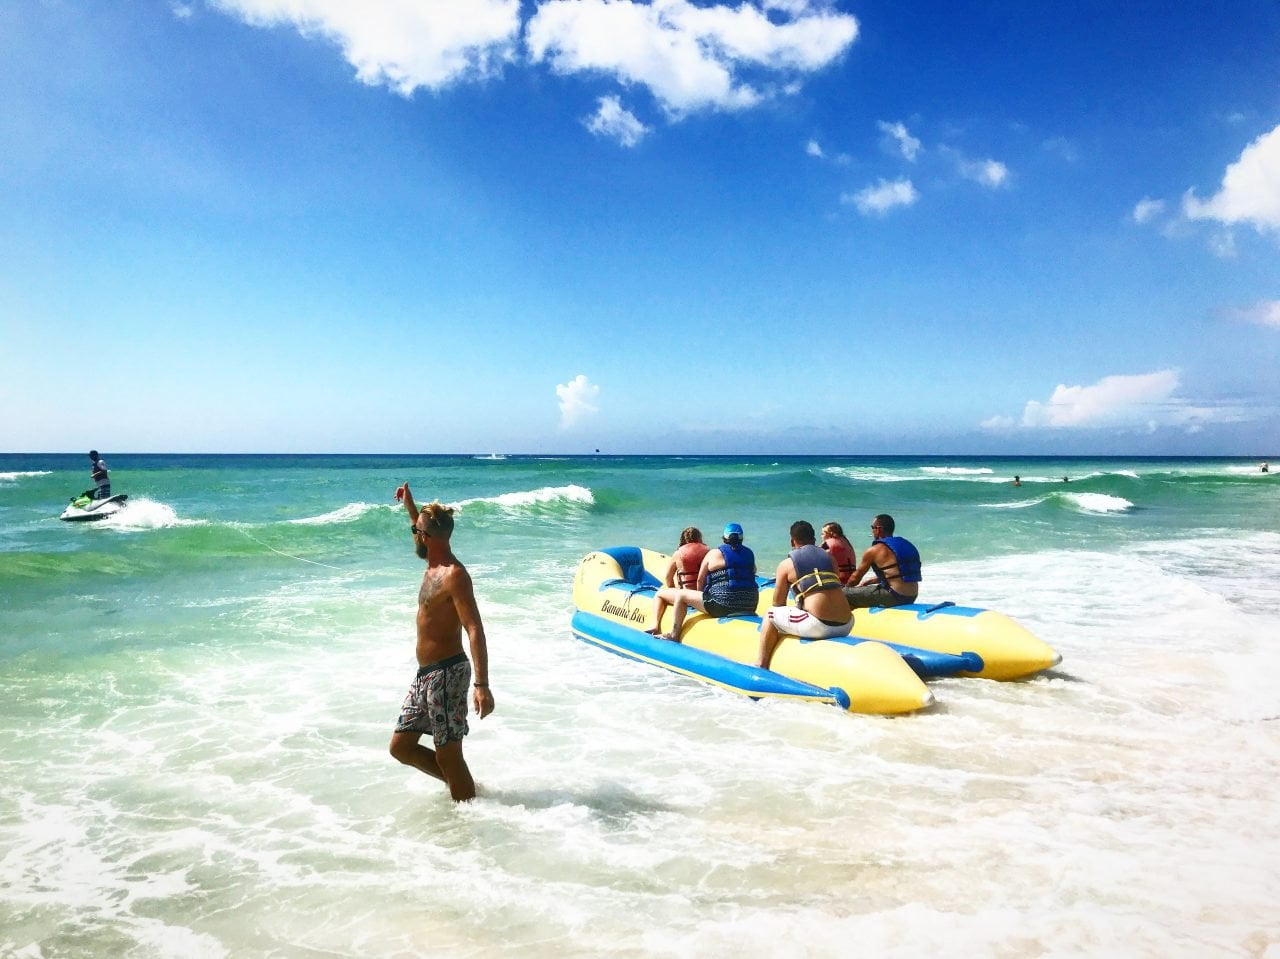 banana boat rides nearby in Panama City Beach Florida